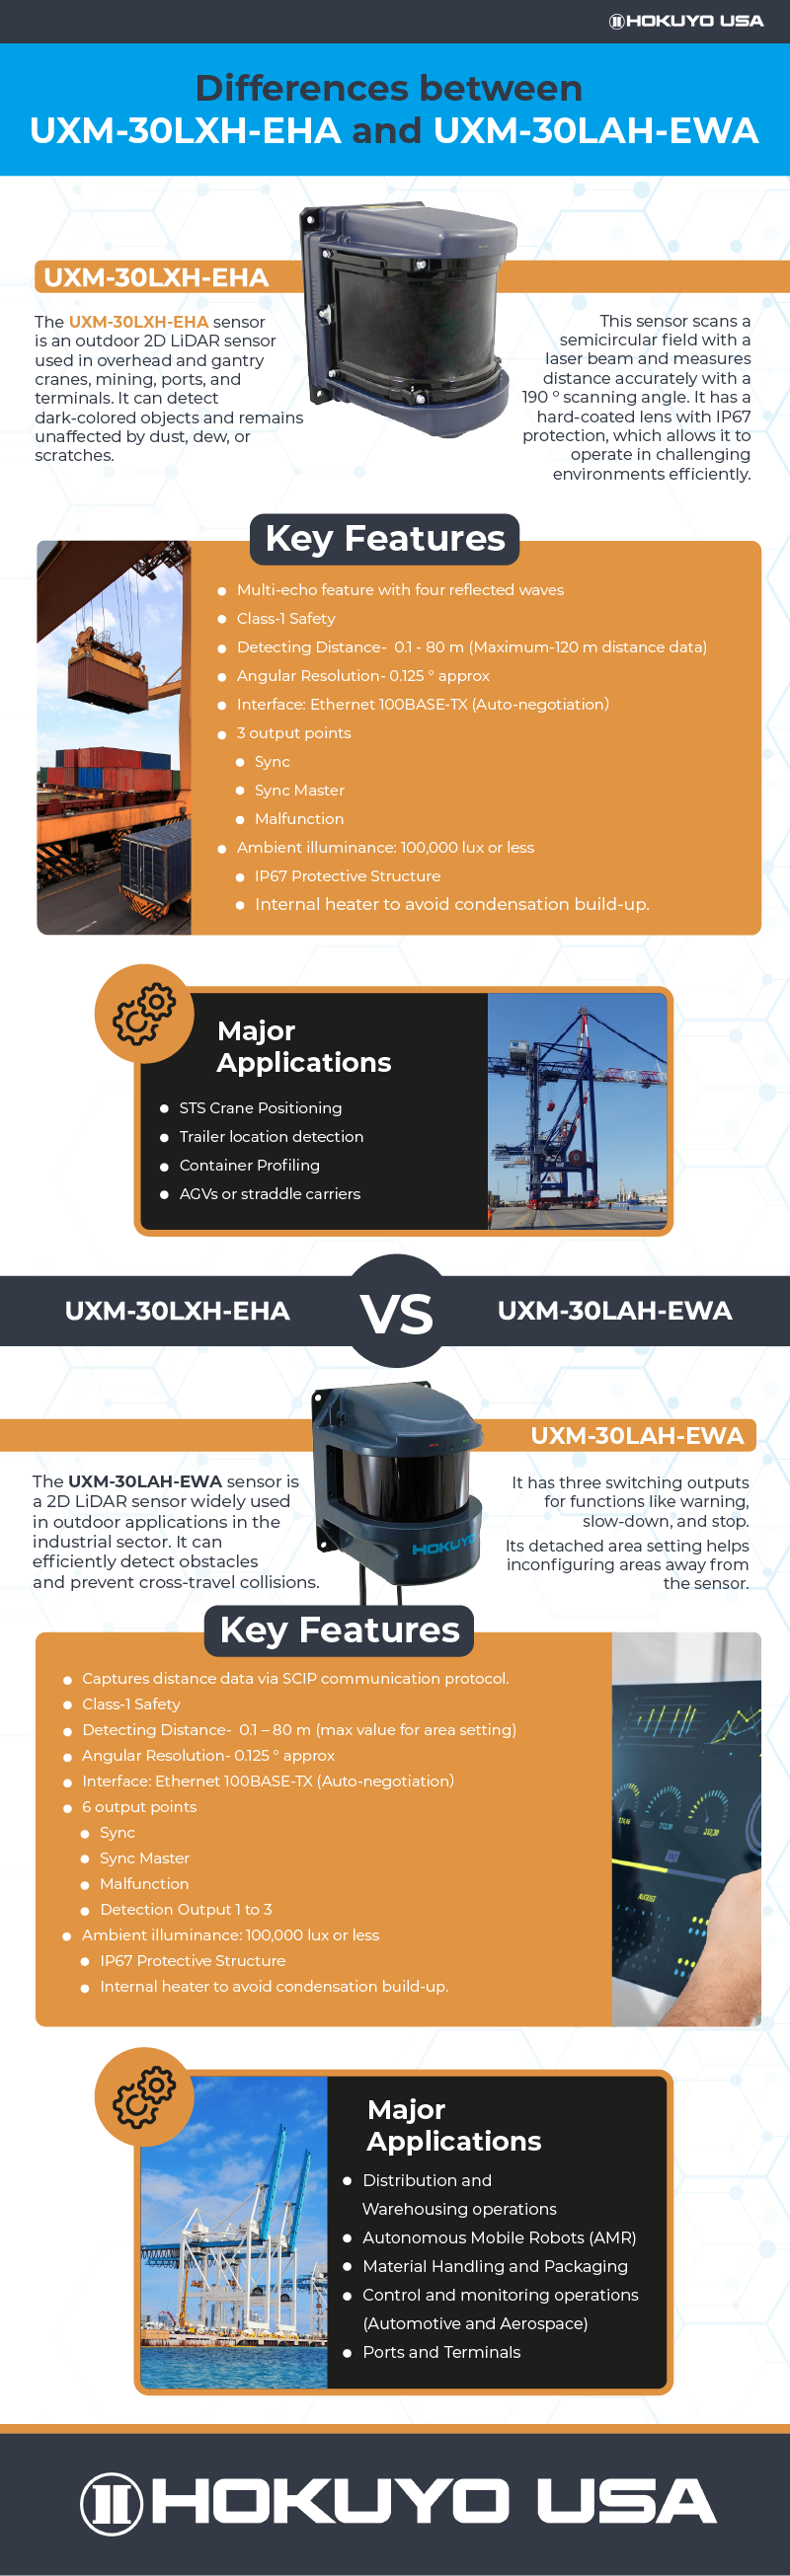 hokuyo-usa-product-comparison-infographic.png